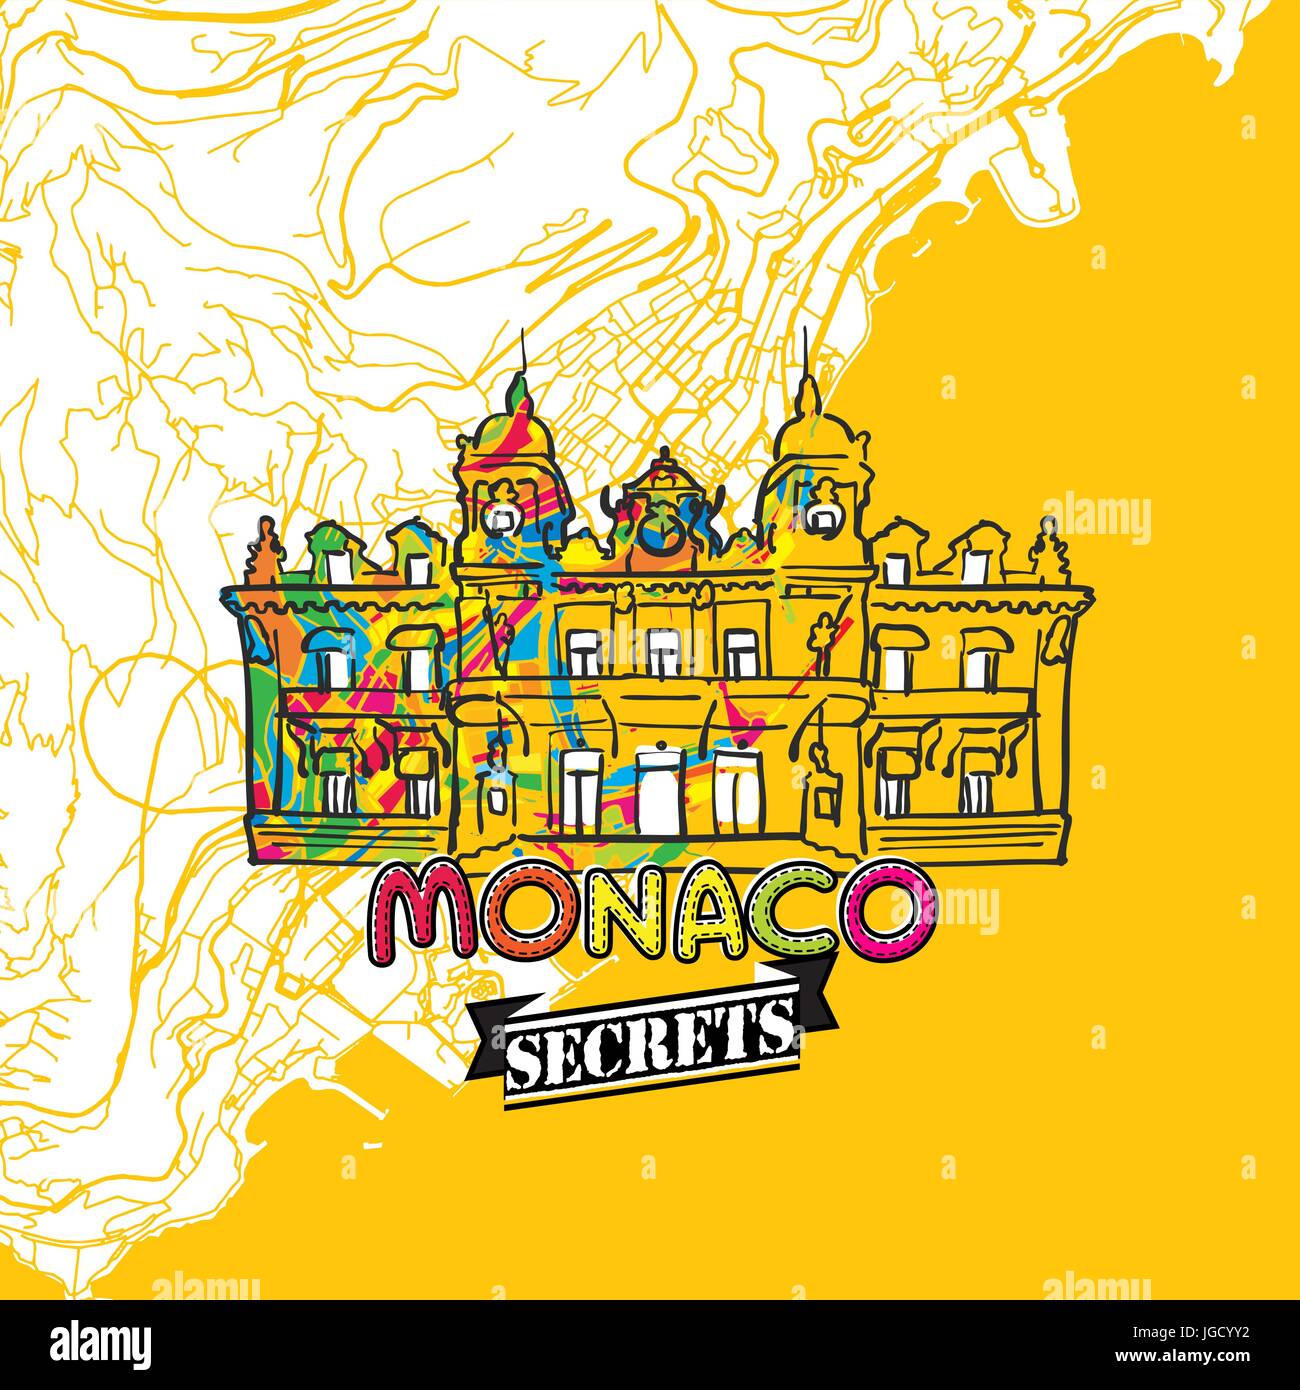 Monaco Art Secrets de Voyage Site pour la cartographie des experts et des guides de voyage. Le logo de la ville à la main, typo de badge et dessinés à la main sur le dessus de l'image vectorielle sont regroupés et Illustration de Vecteur